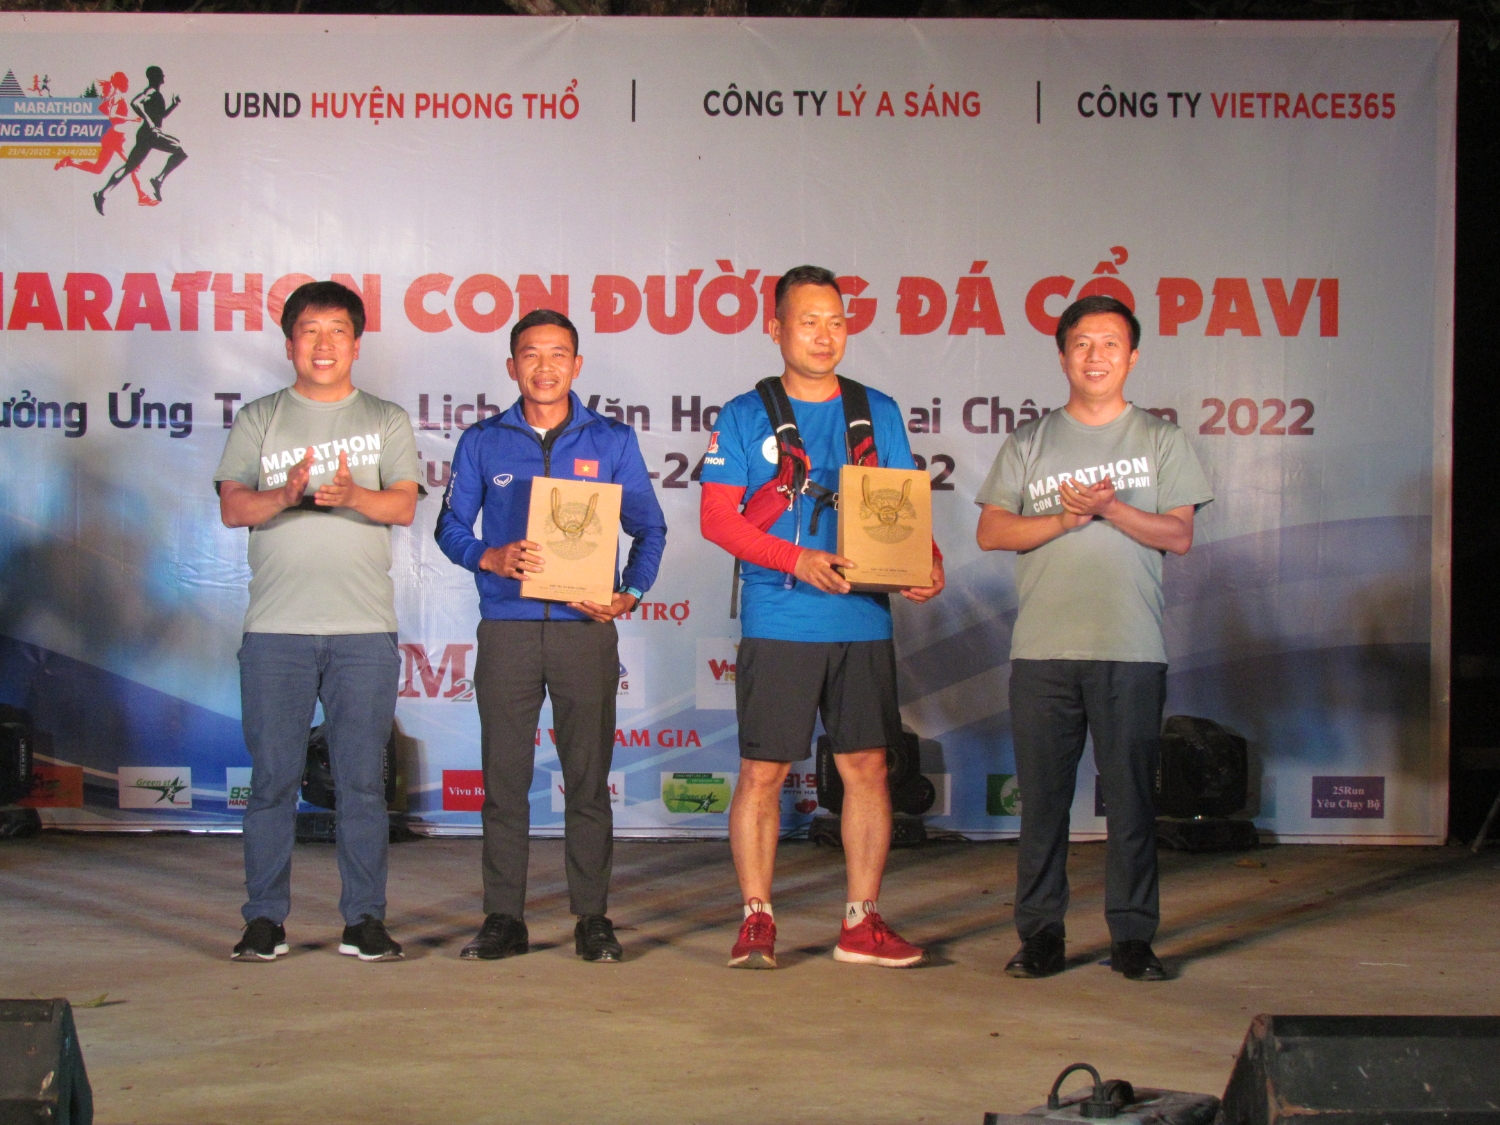 Lãnh đạo huyện Phong Thổ tặng quà cho các đơn vị đồng phối hợp tổ chức Giải chạy